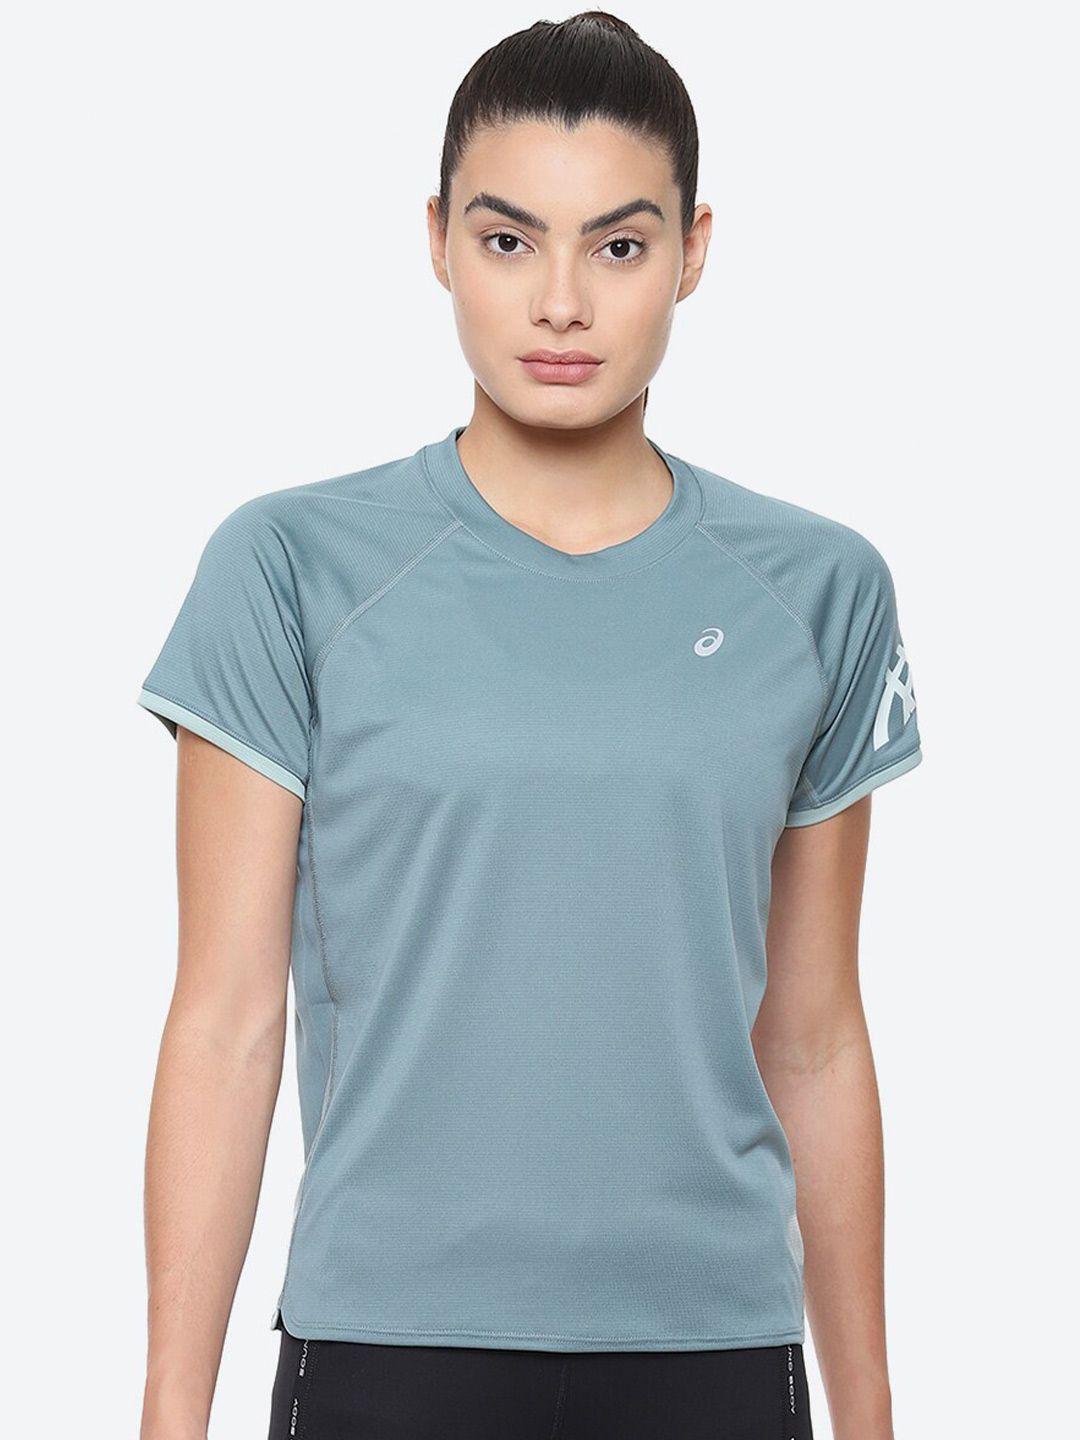 asics icon ss green brand logo printed raglan sleeves sports tshirts